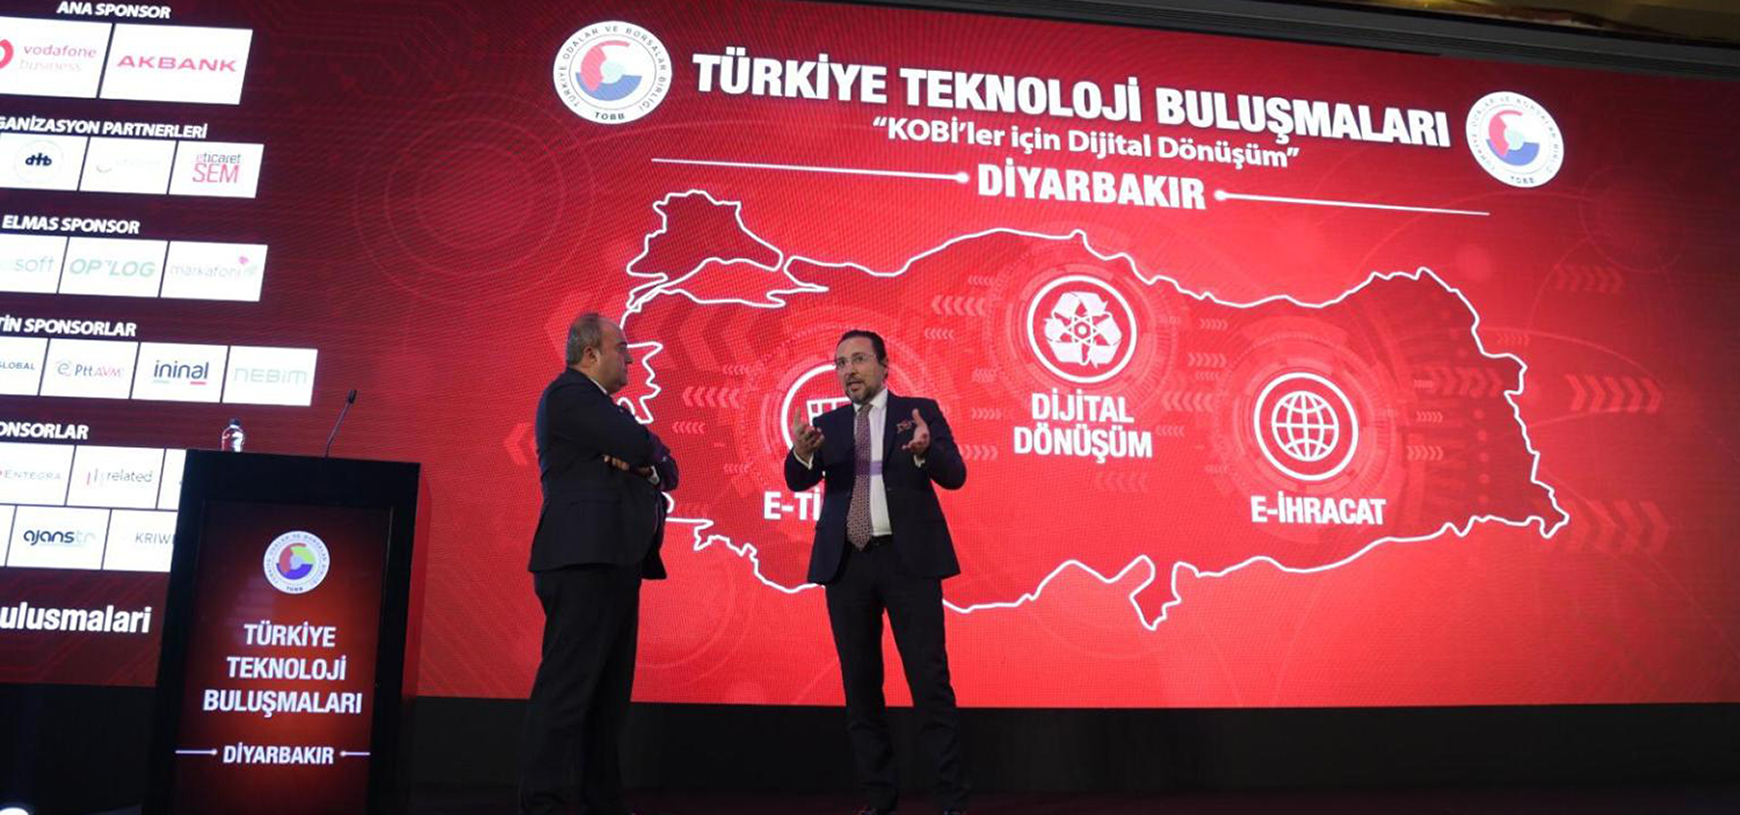 Türkiye Teknoloji Buluşmaları – Diyarbakır